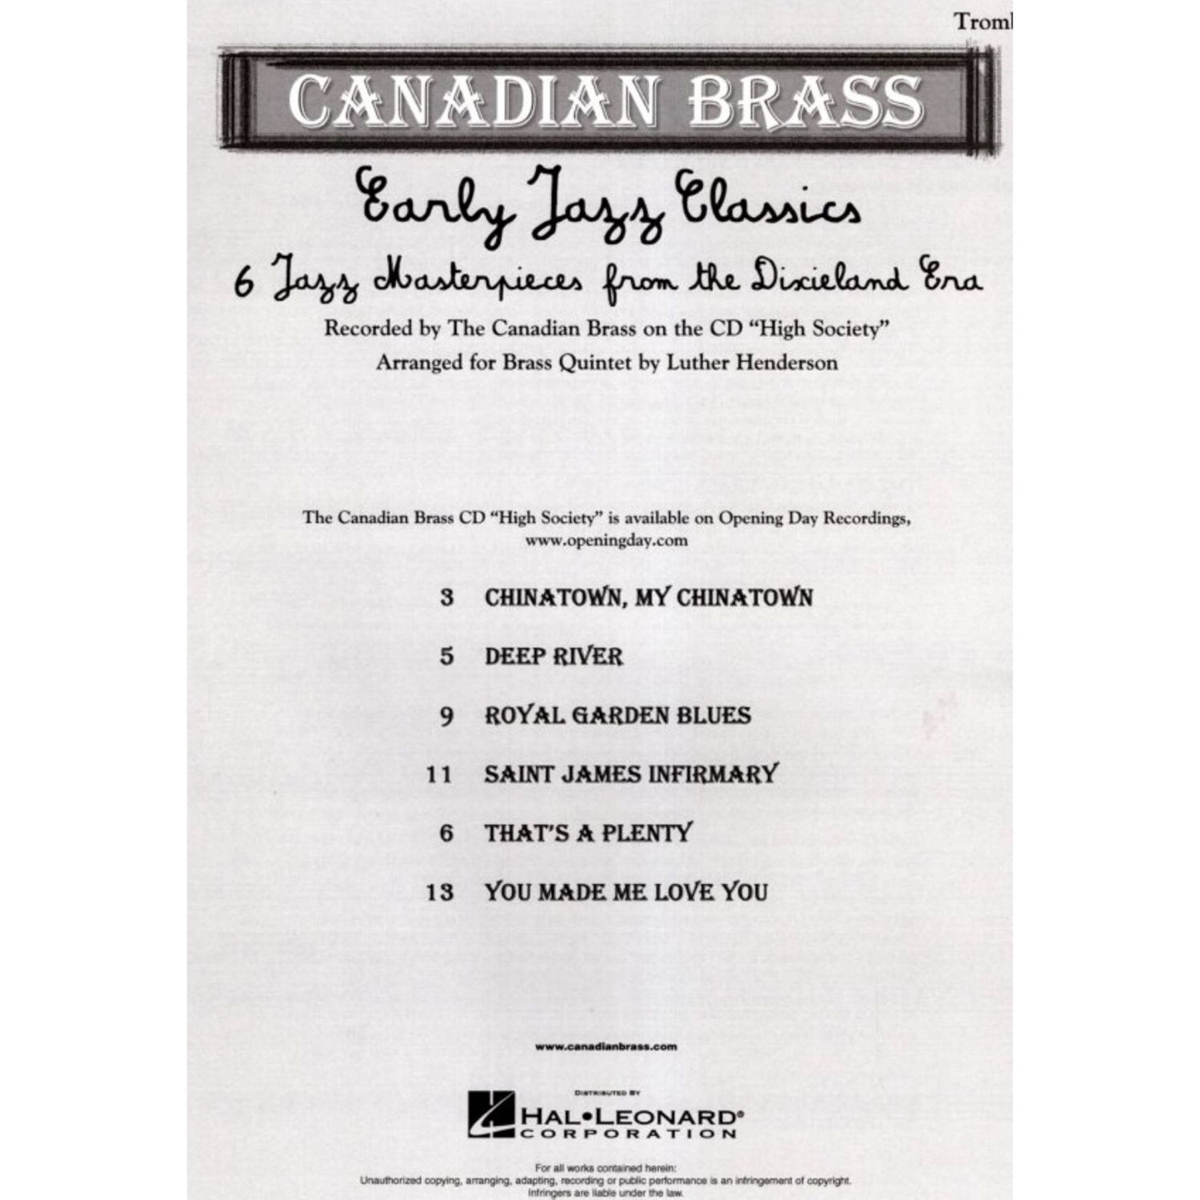 Early Jazz Classics - Trombone - 6 Clássicos de Jazz (Erlay